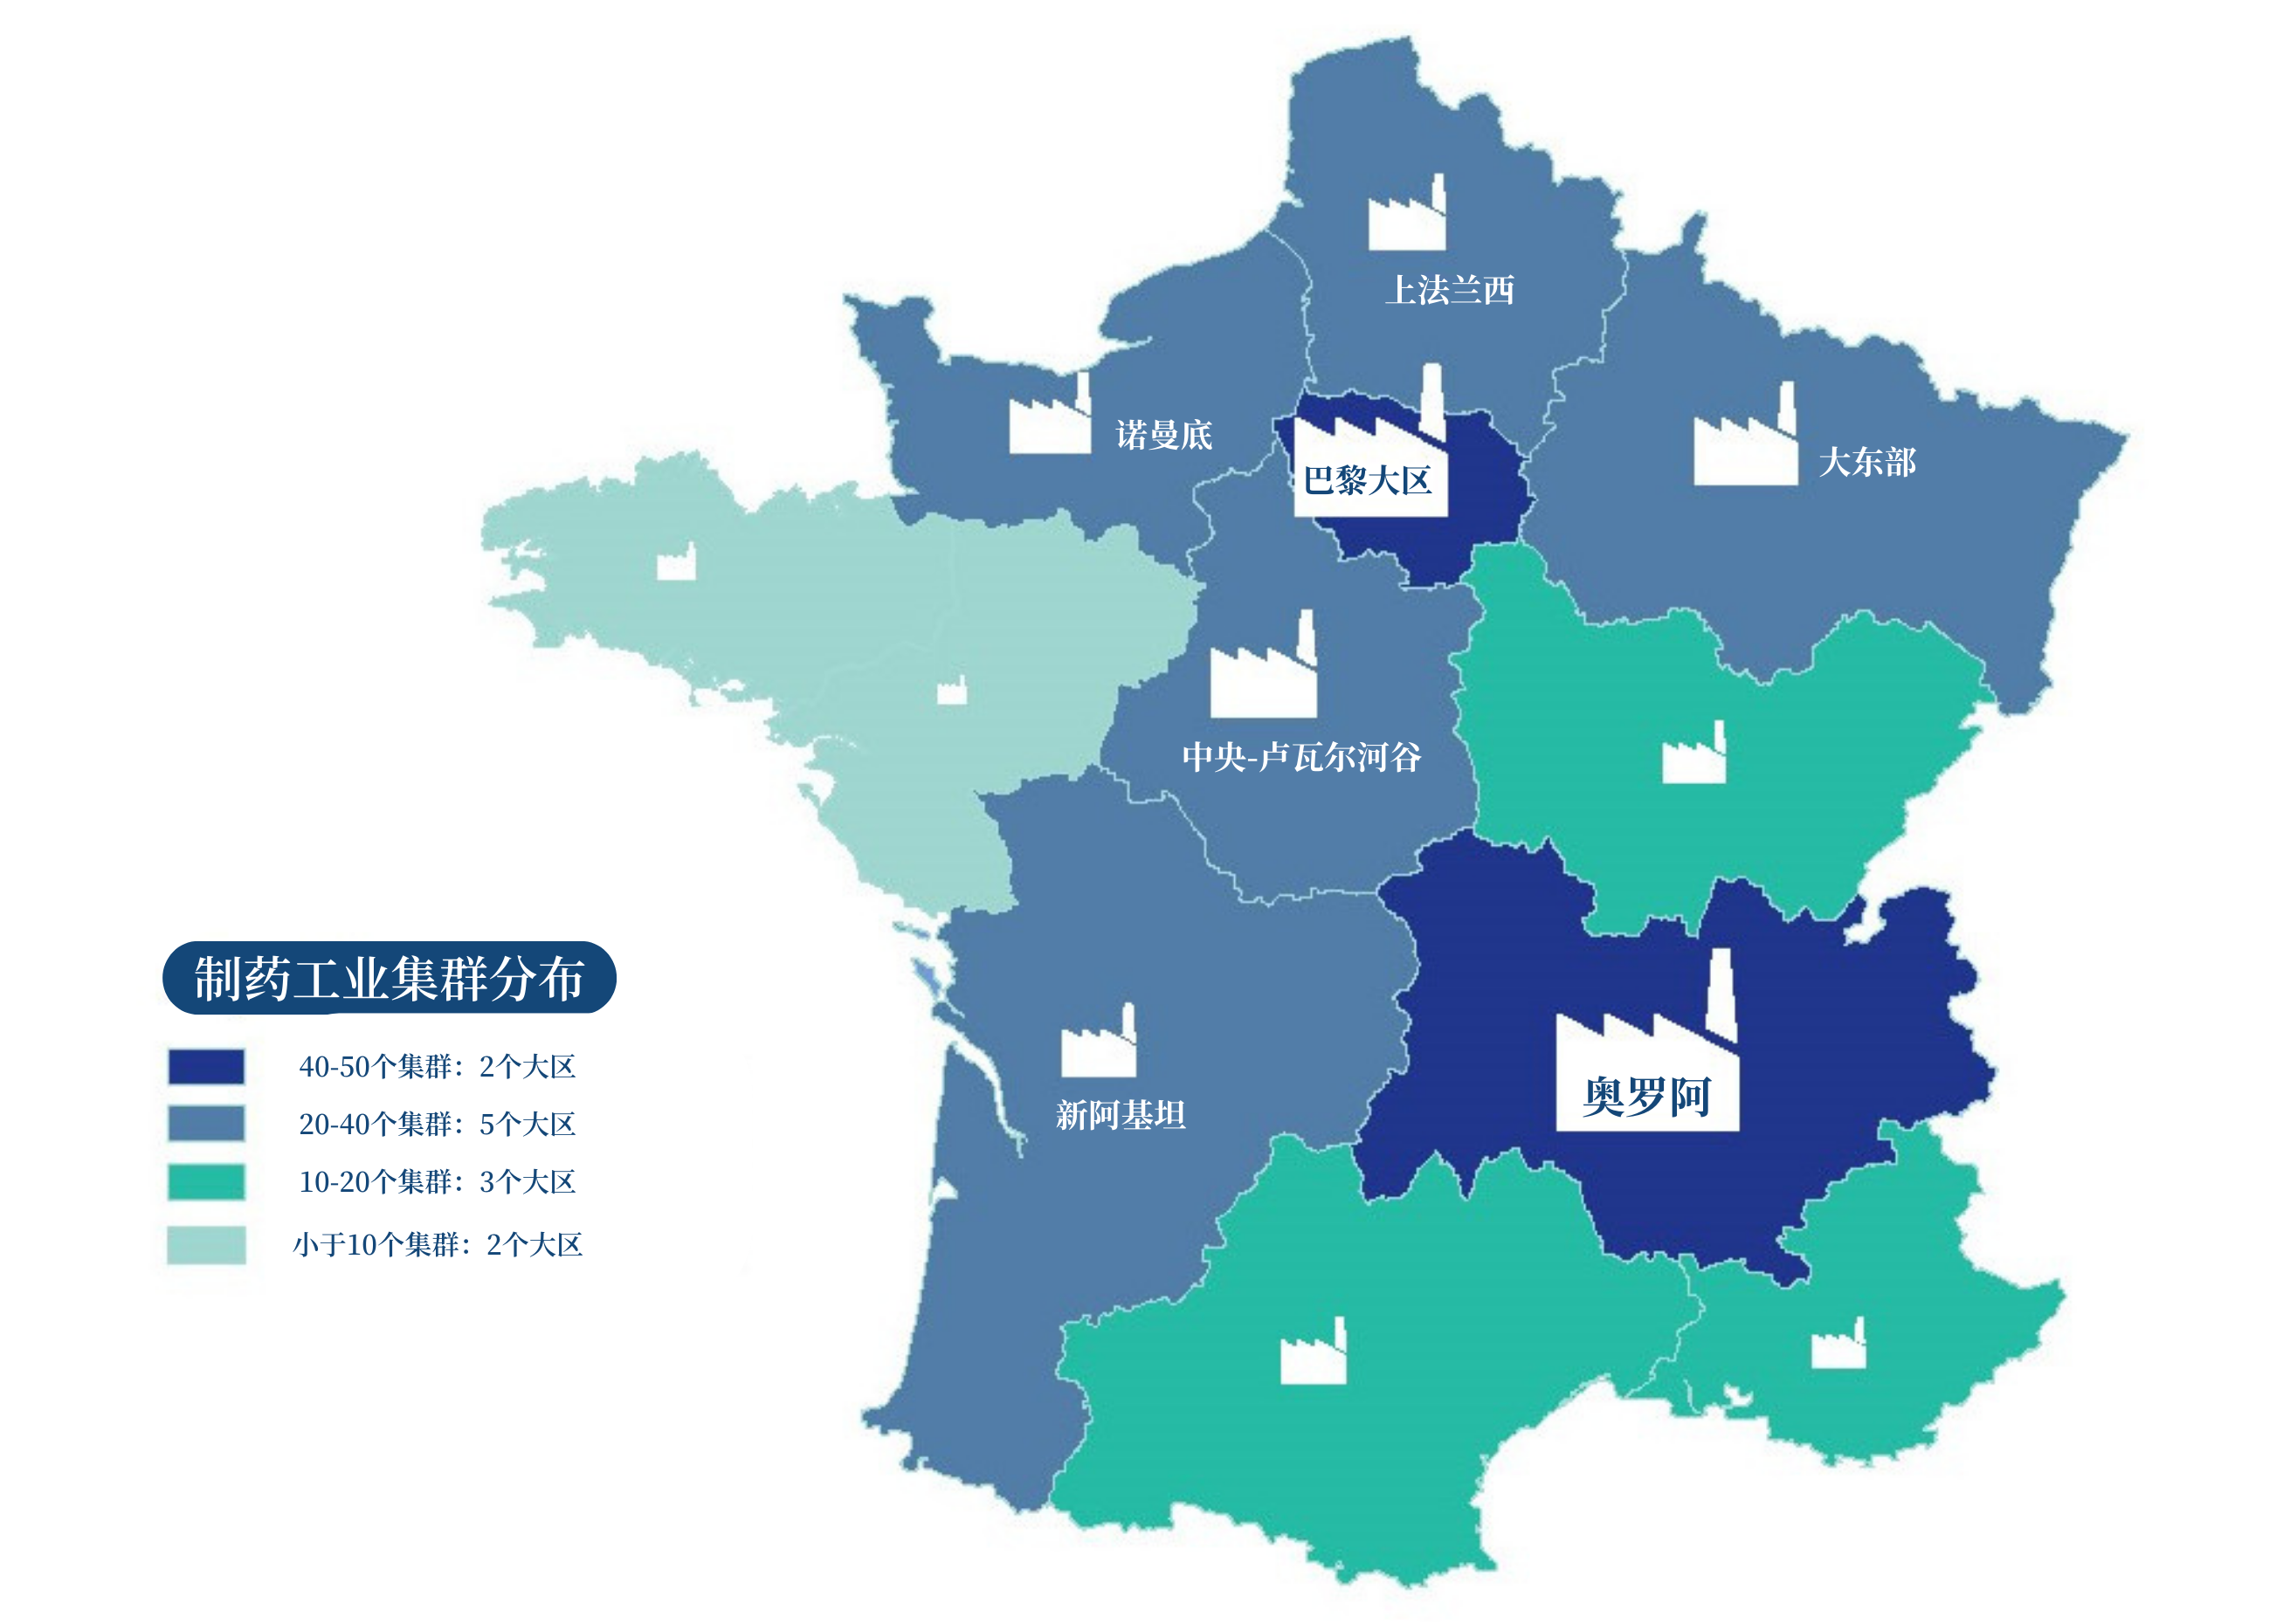 截至2020年,法国拥有271个制药工业集群,并广泛分布在全国各地